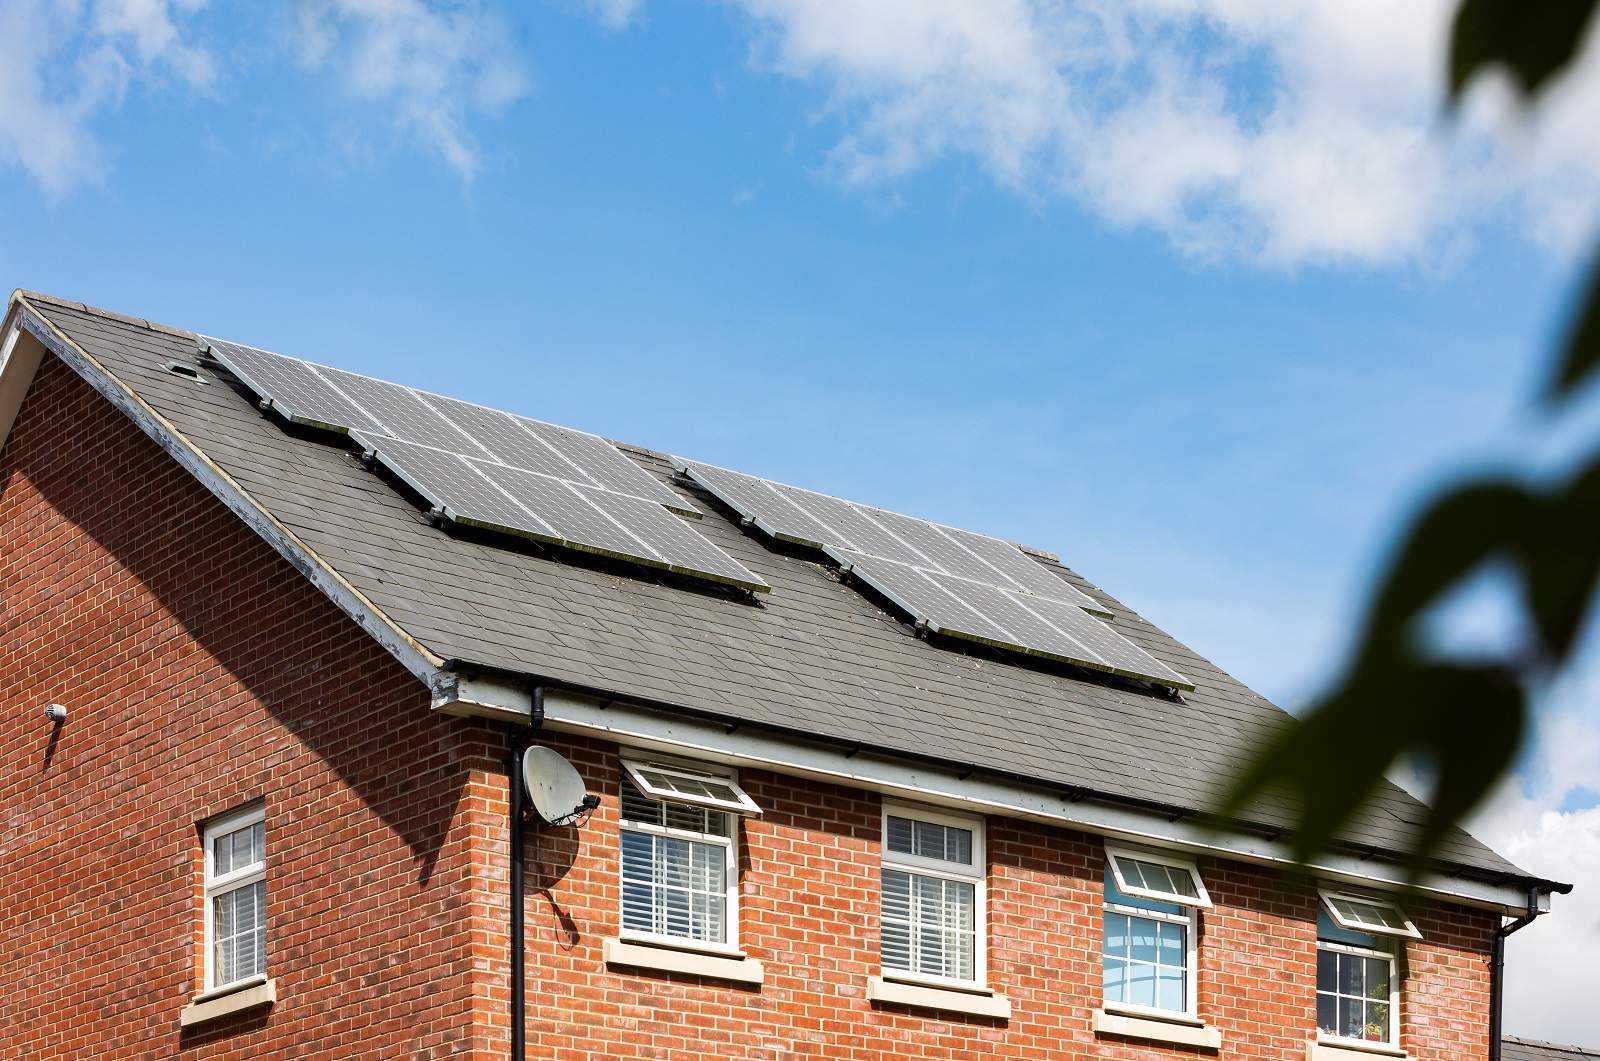 Paikallisyhteisöt ovat edistäneet aurinkopaneelien käyttöä. Kuvassa omakotitalo, jonka katolla on aurinkokeräimiä.